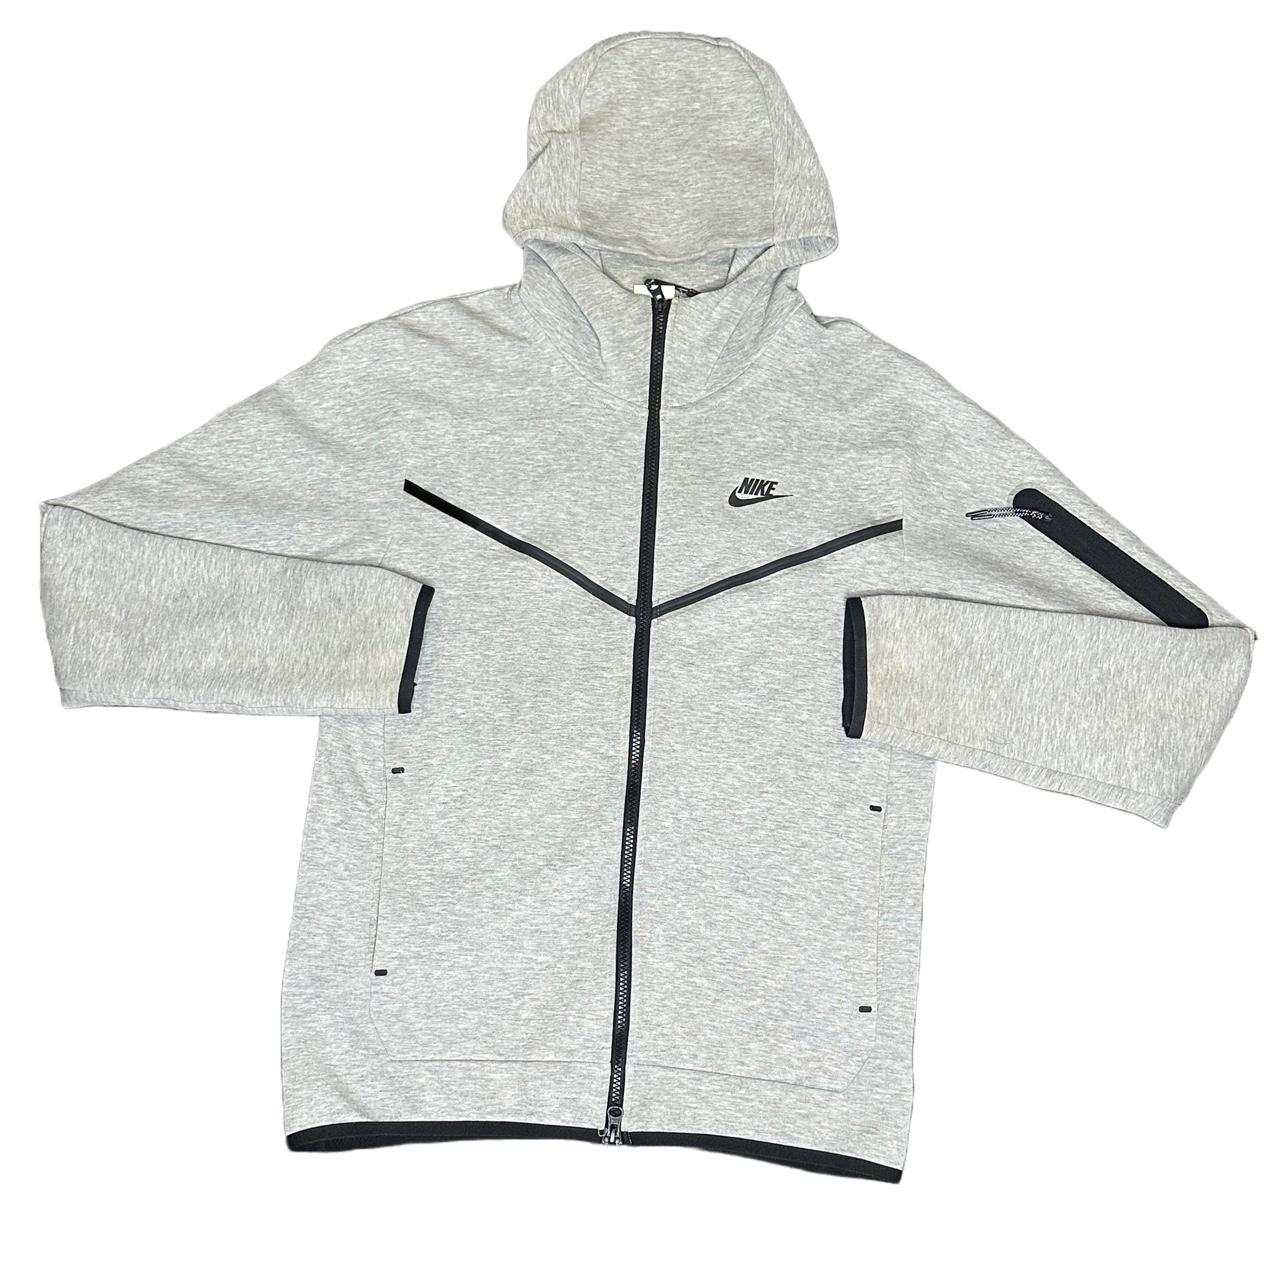 Nike Tech Fleece Jacket Size: Small Great... - Depop